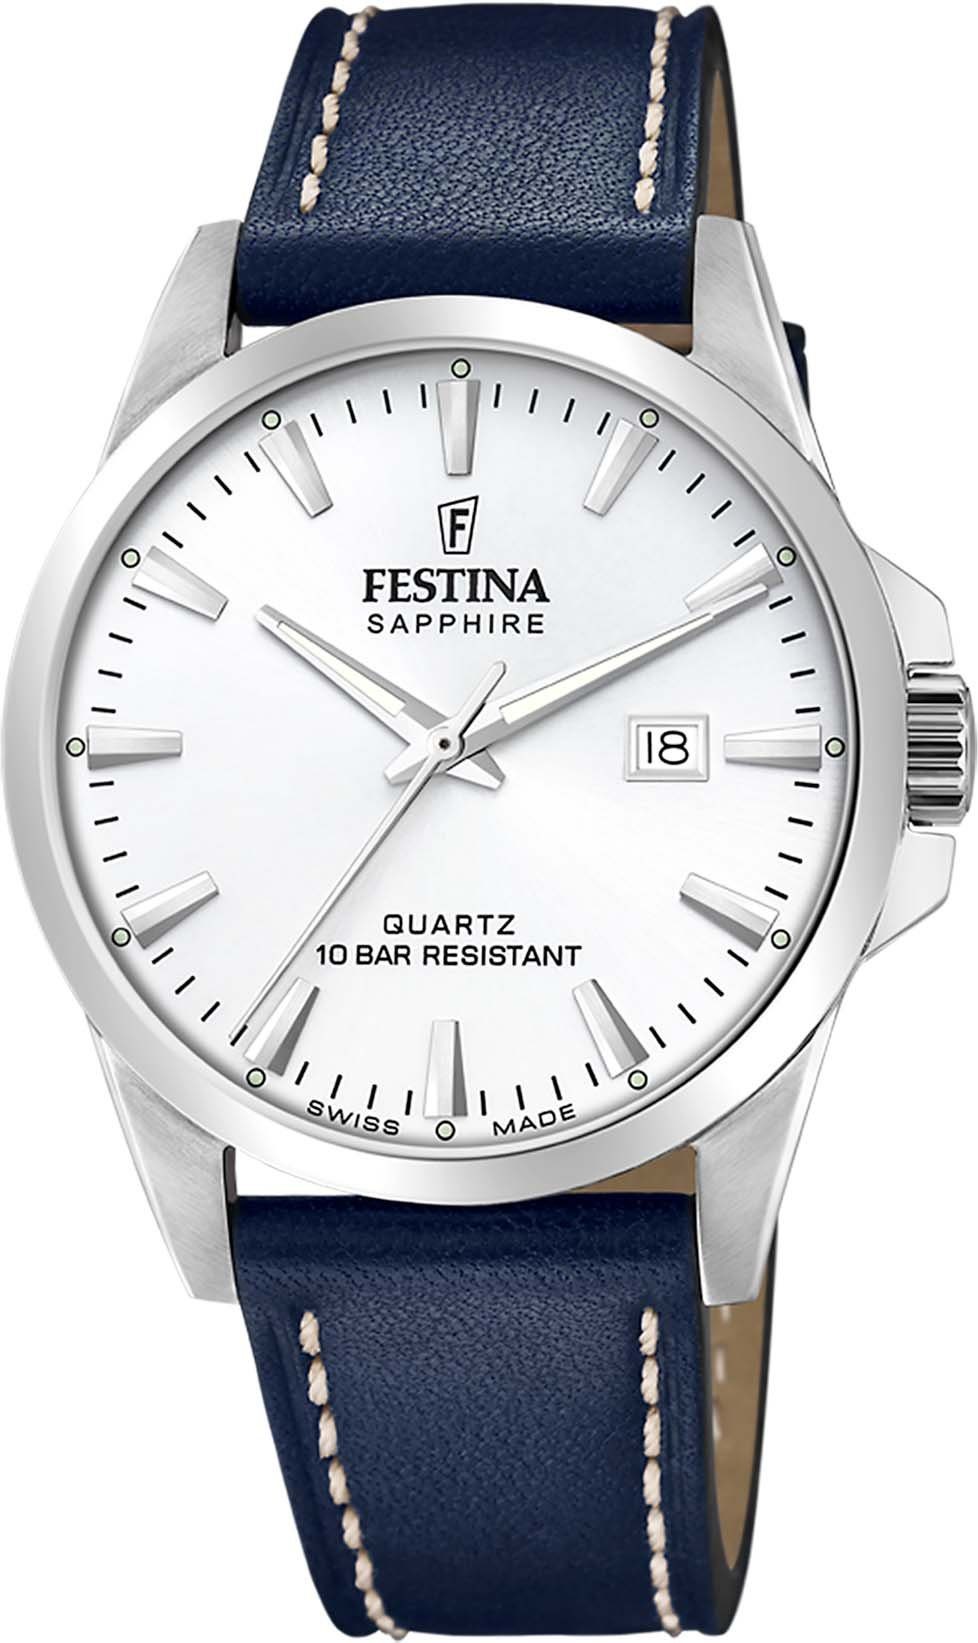 Festina Schweizer Uhr Swiss Made, F20025/2